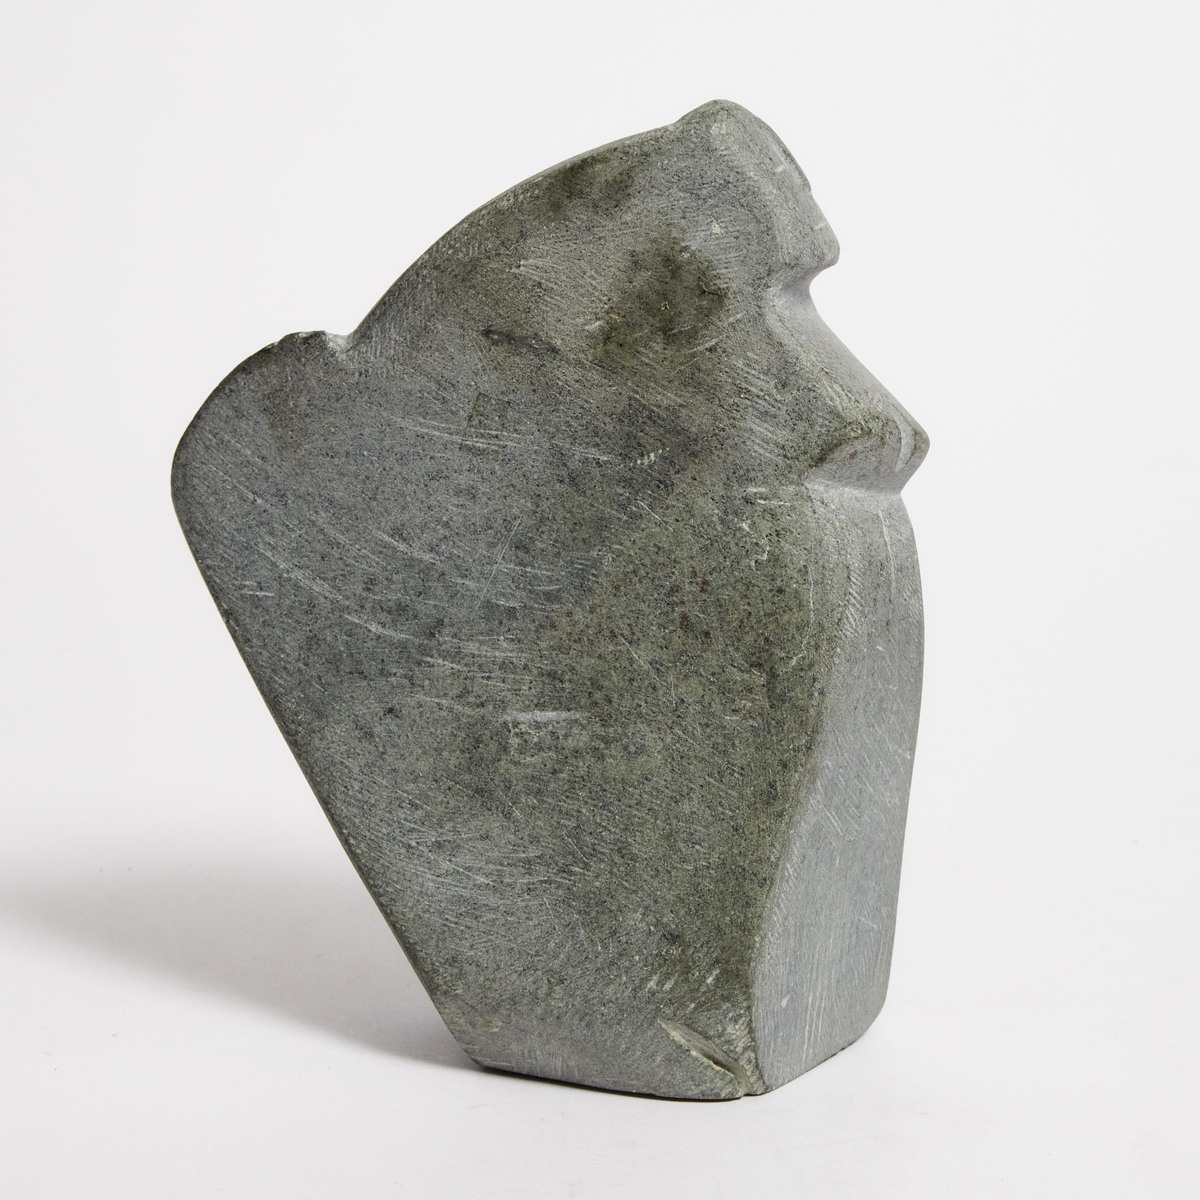 John Pangnark ᔭᓐ ᐸᓇ (1920-1980), FIGURE, CIRCA 1970S, stone, 7 x 5.5 x 2.5 in — 17.8 x 14 x 6.4 cm - Image 2 of 5